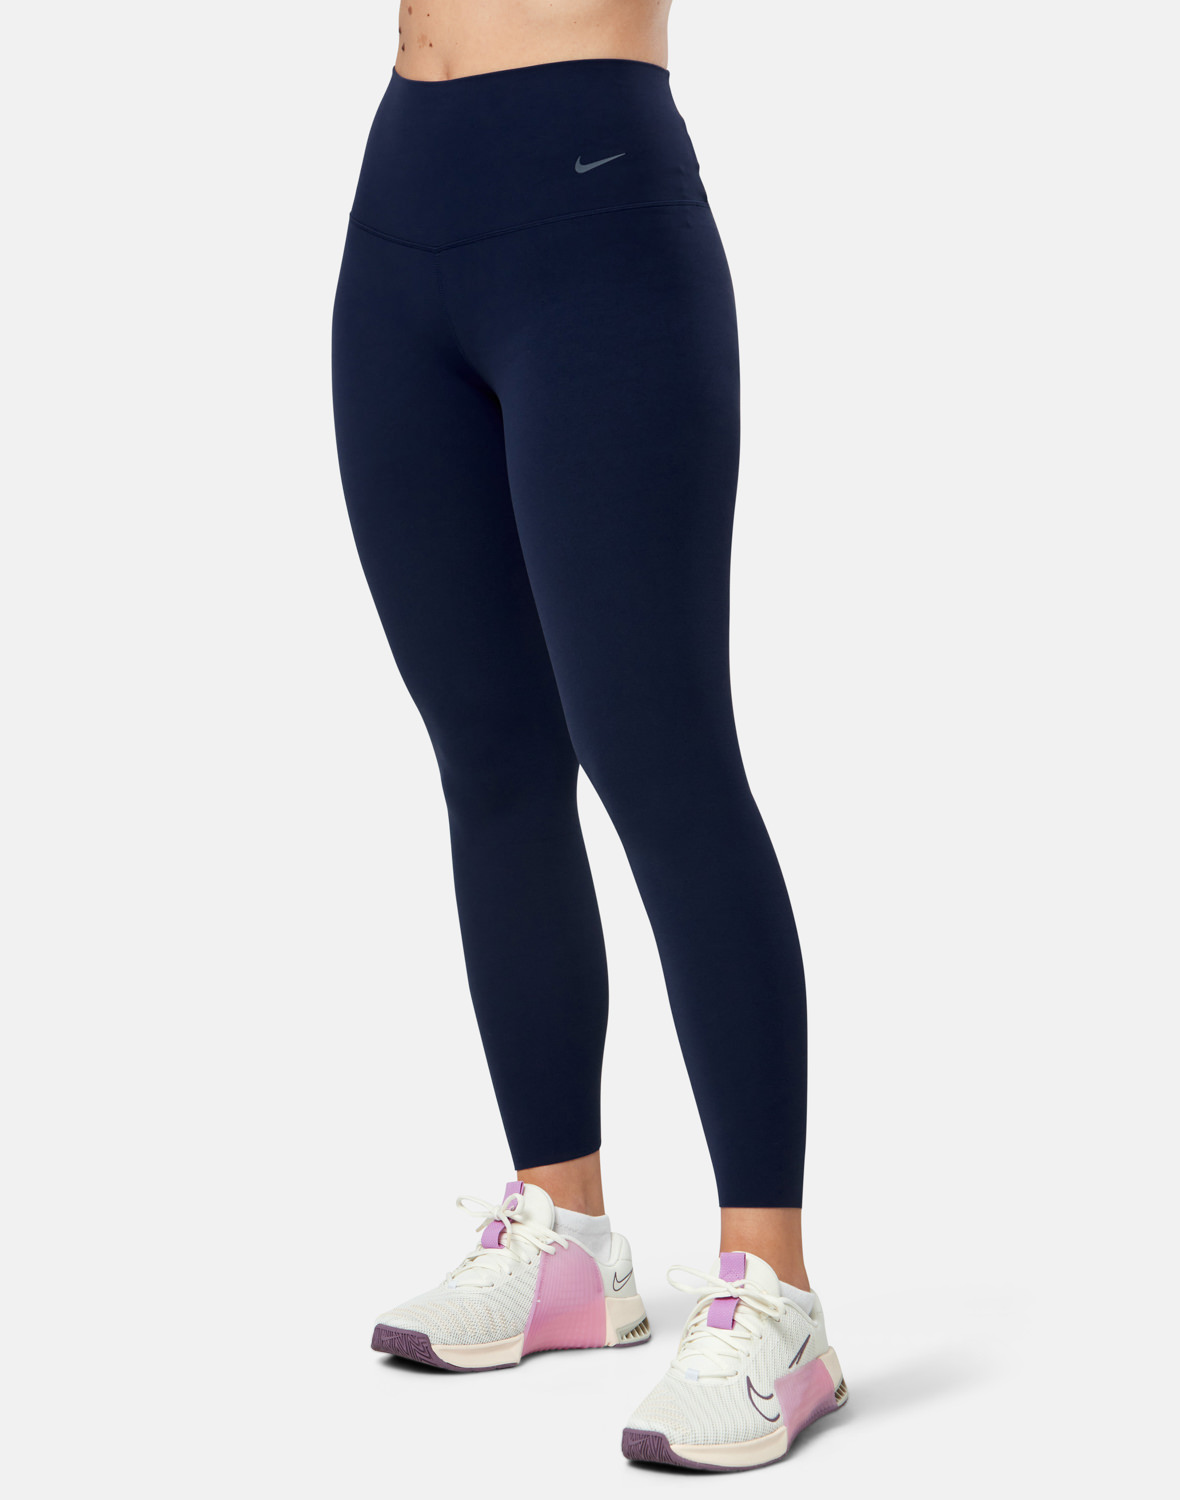 Nike Womens Zenvy 7/8 Leggings - Navy